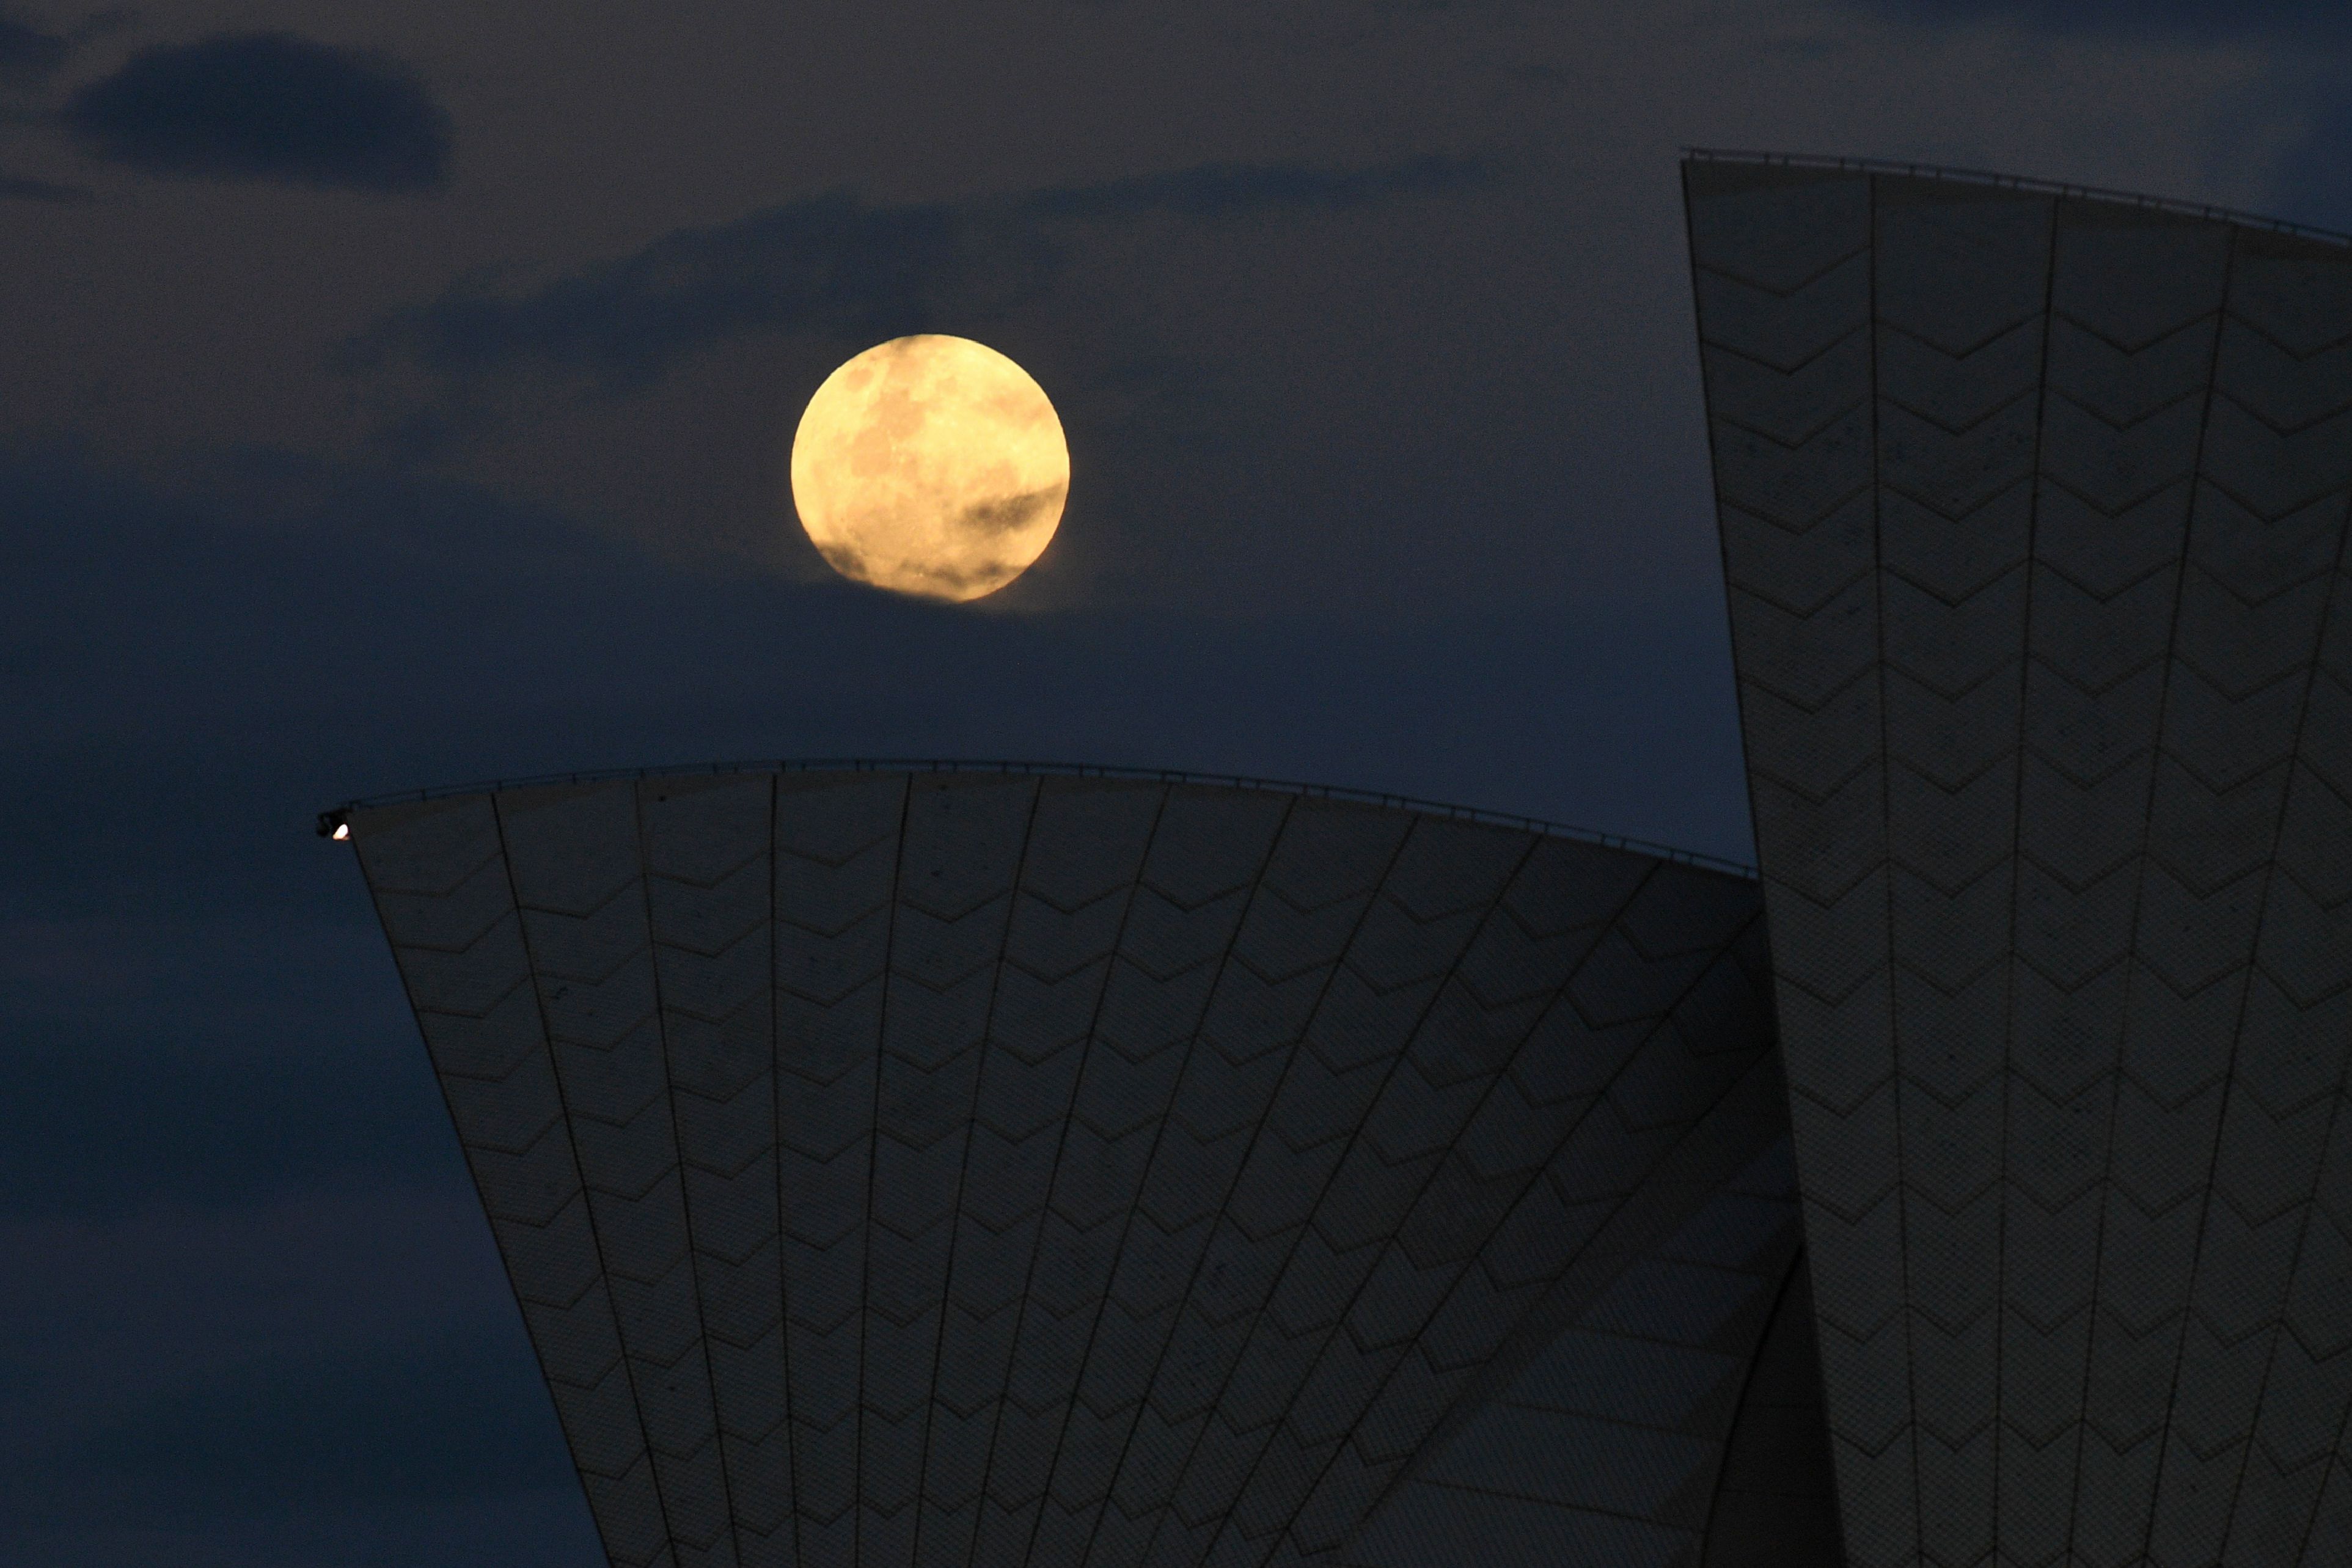 ซุปเปอร์มูนเหนือหลังคาของซิดนีย์โอเปราเฮาส์ ในนครซิดนีย์ ประเทศออสเตรเลีย / AFP PHOTO / WILLIAM WEST